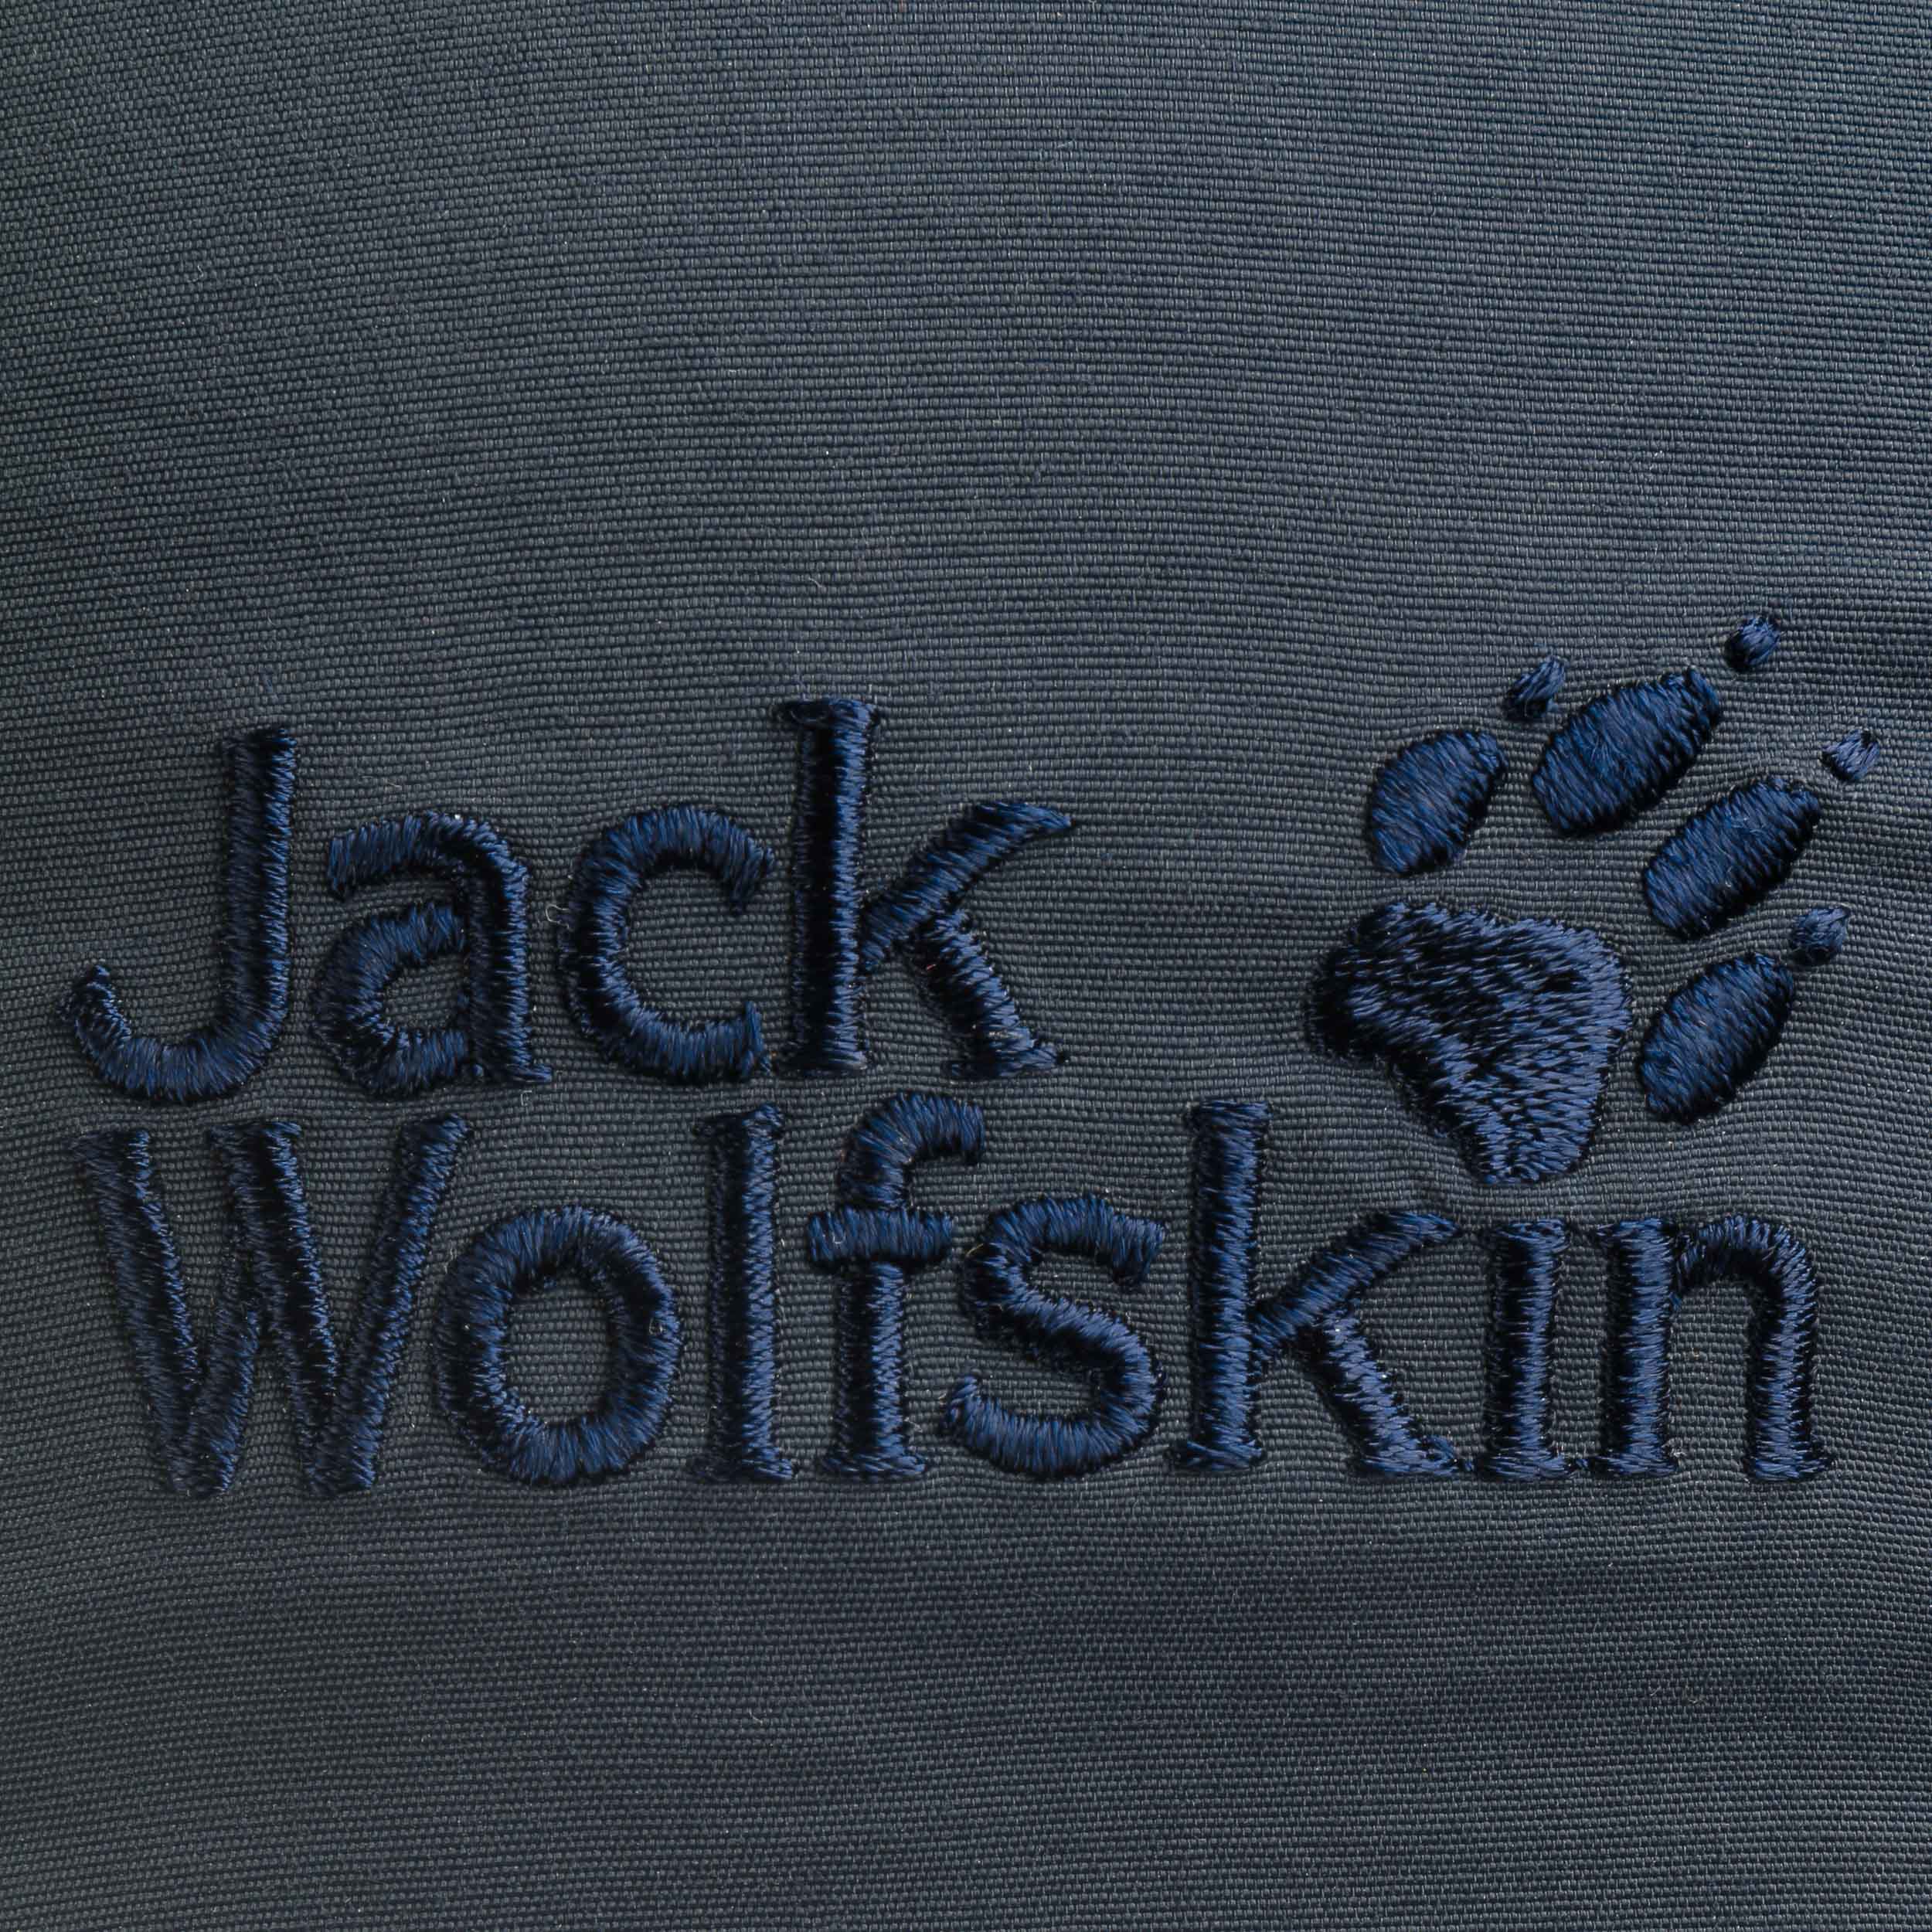 Jack Wolfskin by Vent Supplex Pro 32,95 Cap € -